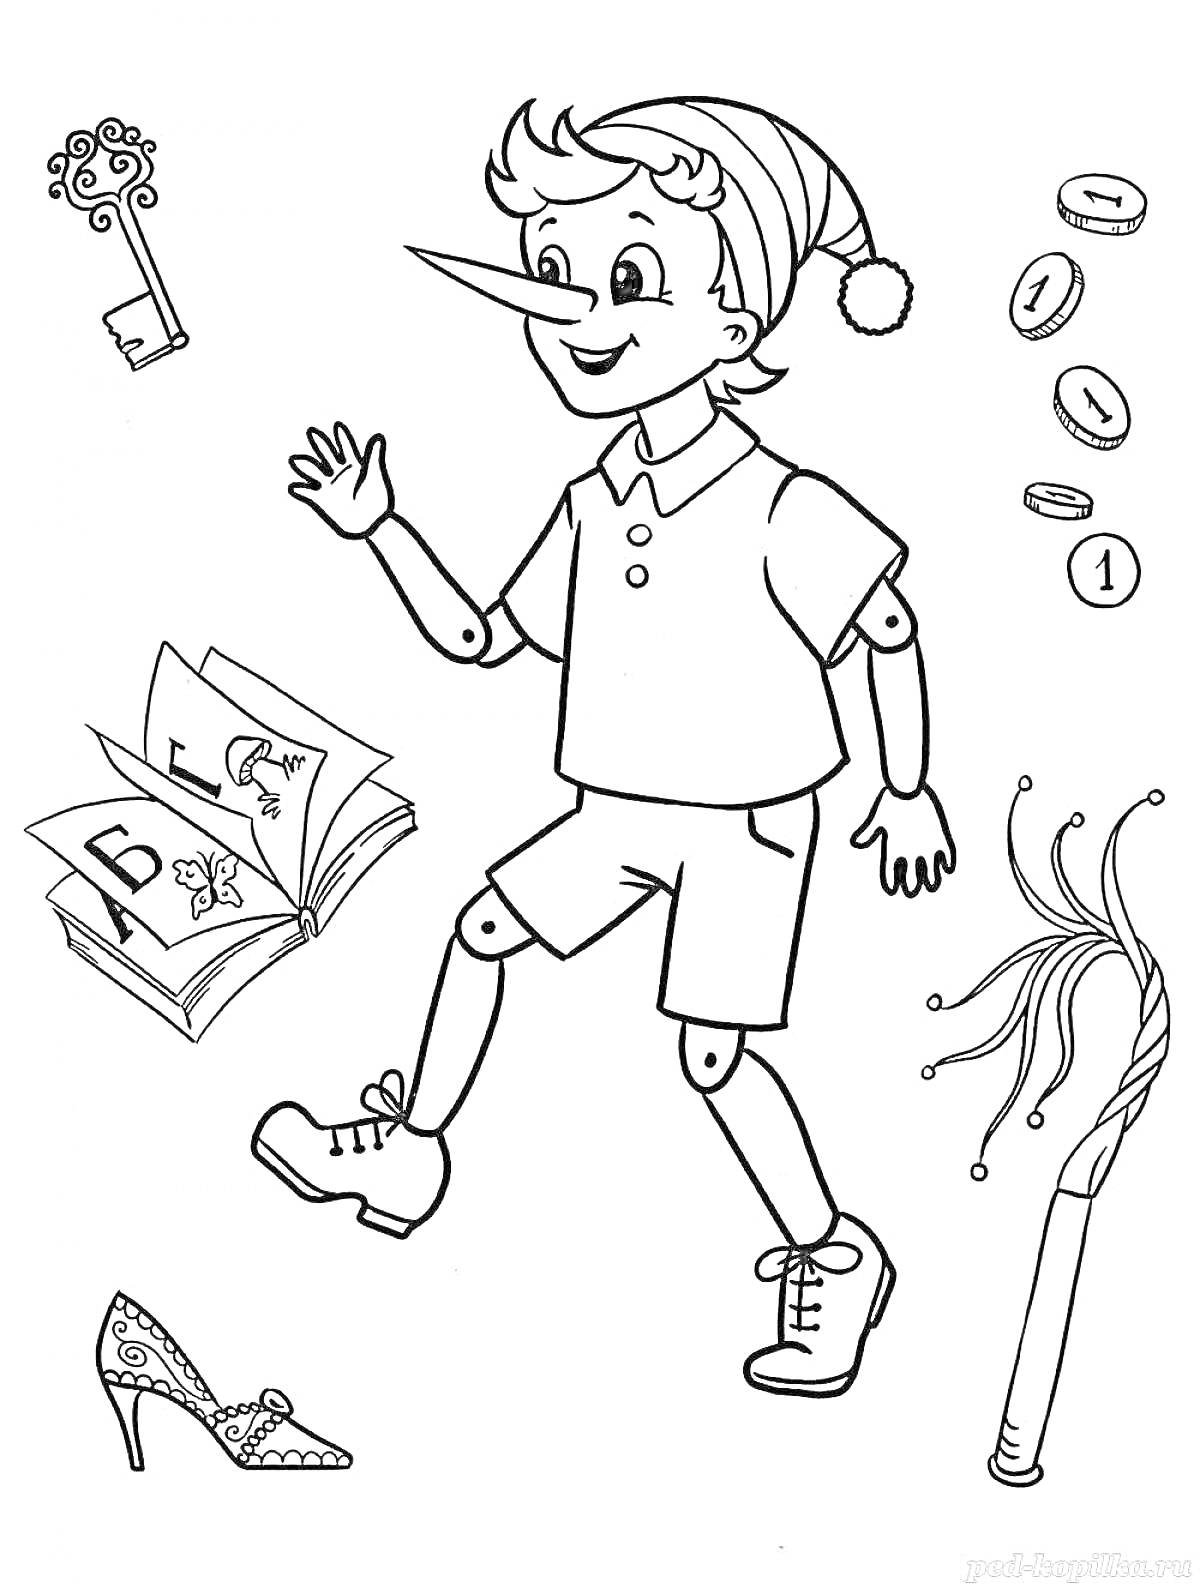 Раскраска Буратино с ключом, книгой, монетами, кнутом и туфлей